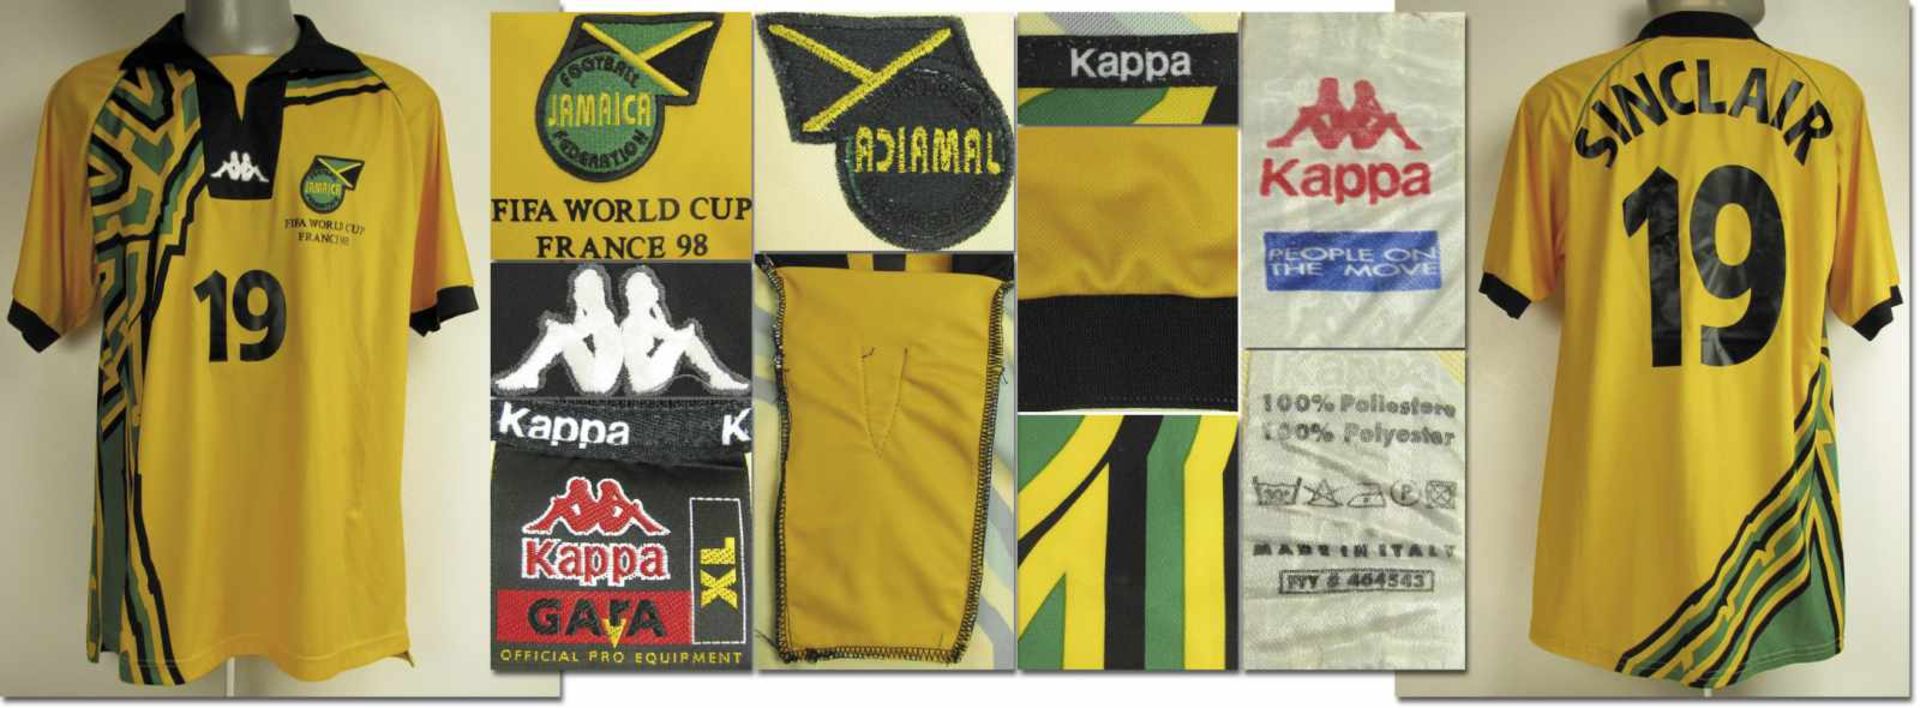 World Cup 1998 match worn football shirt Jamaica - Original match worn shirt Jamaica with number 19.